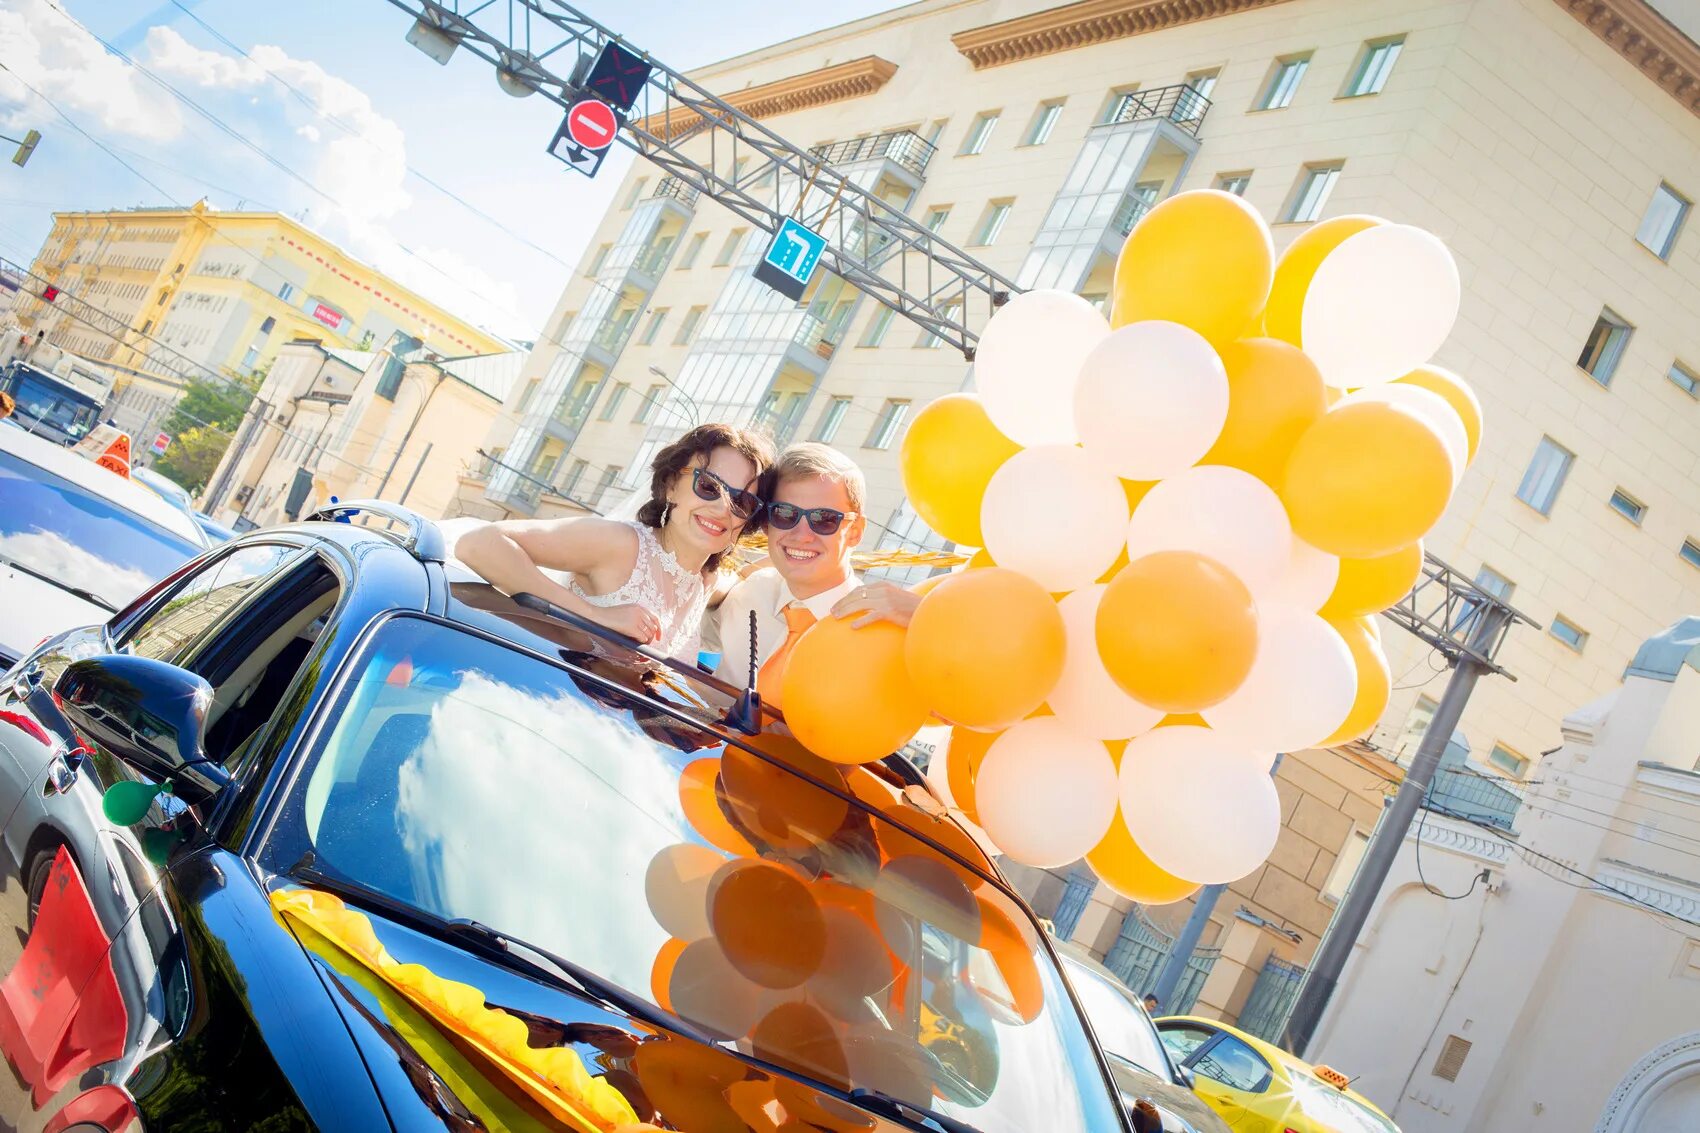 Доставка шаров с гелием спб. Гелиевые шары реклама на авто. Фотосессия шары и машина. Доставщик шаров. Гелиевые шары с людьми.